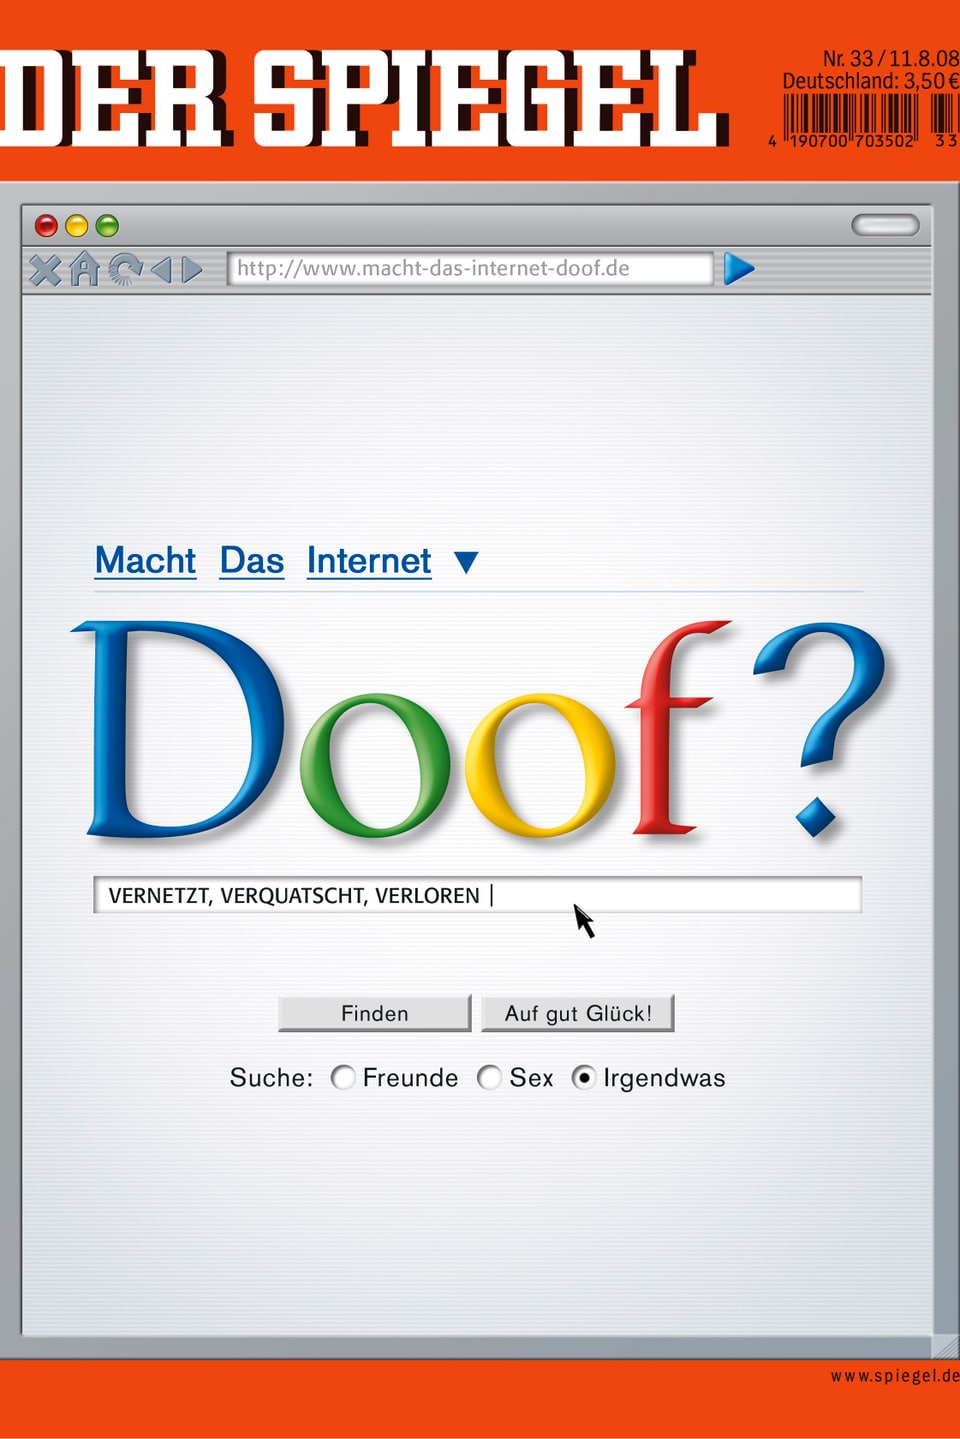 In der Google-Schrift fagt der Spiegel «Doof?»